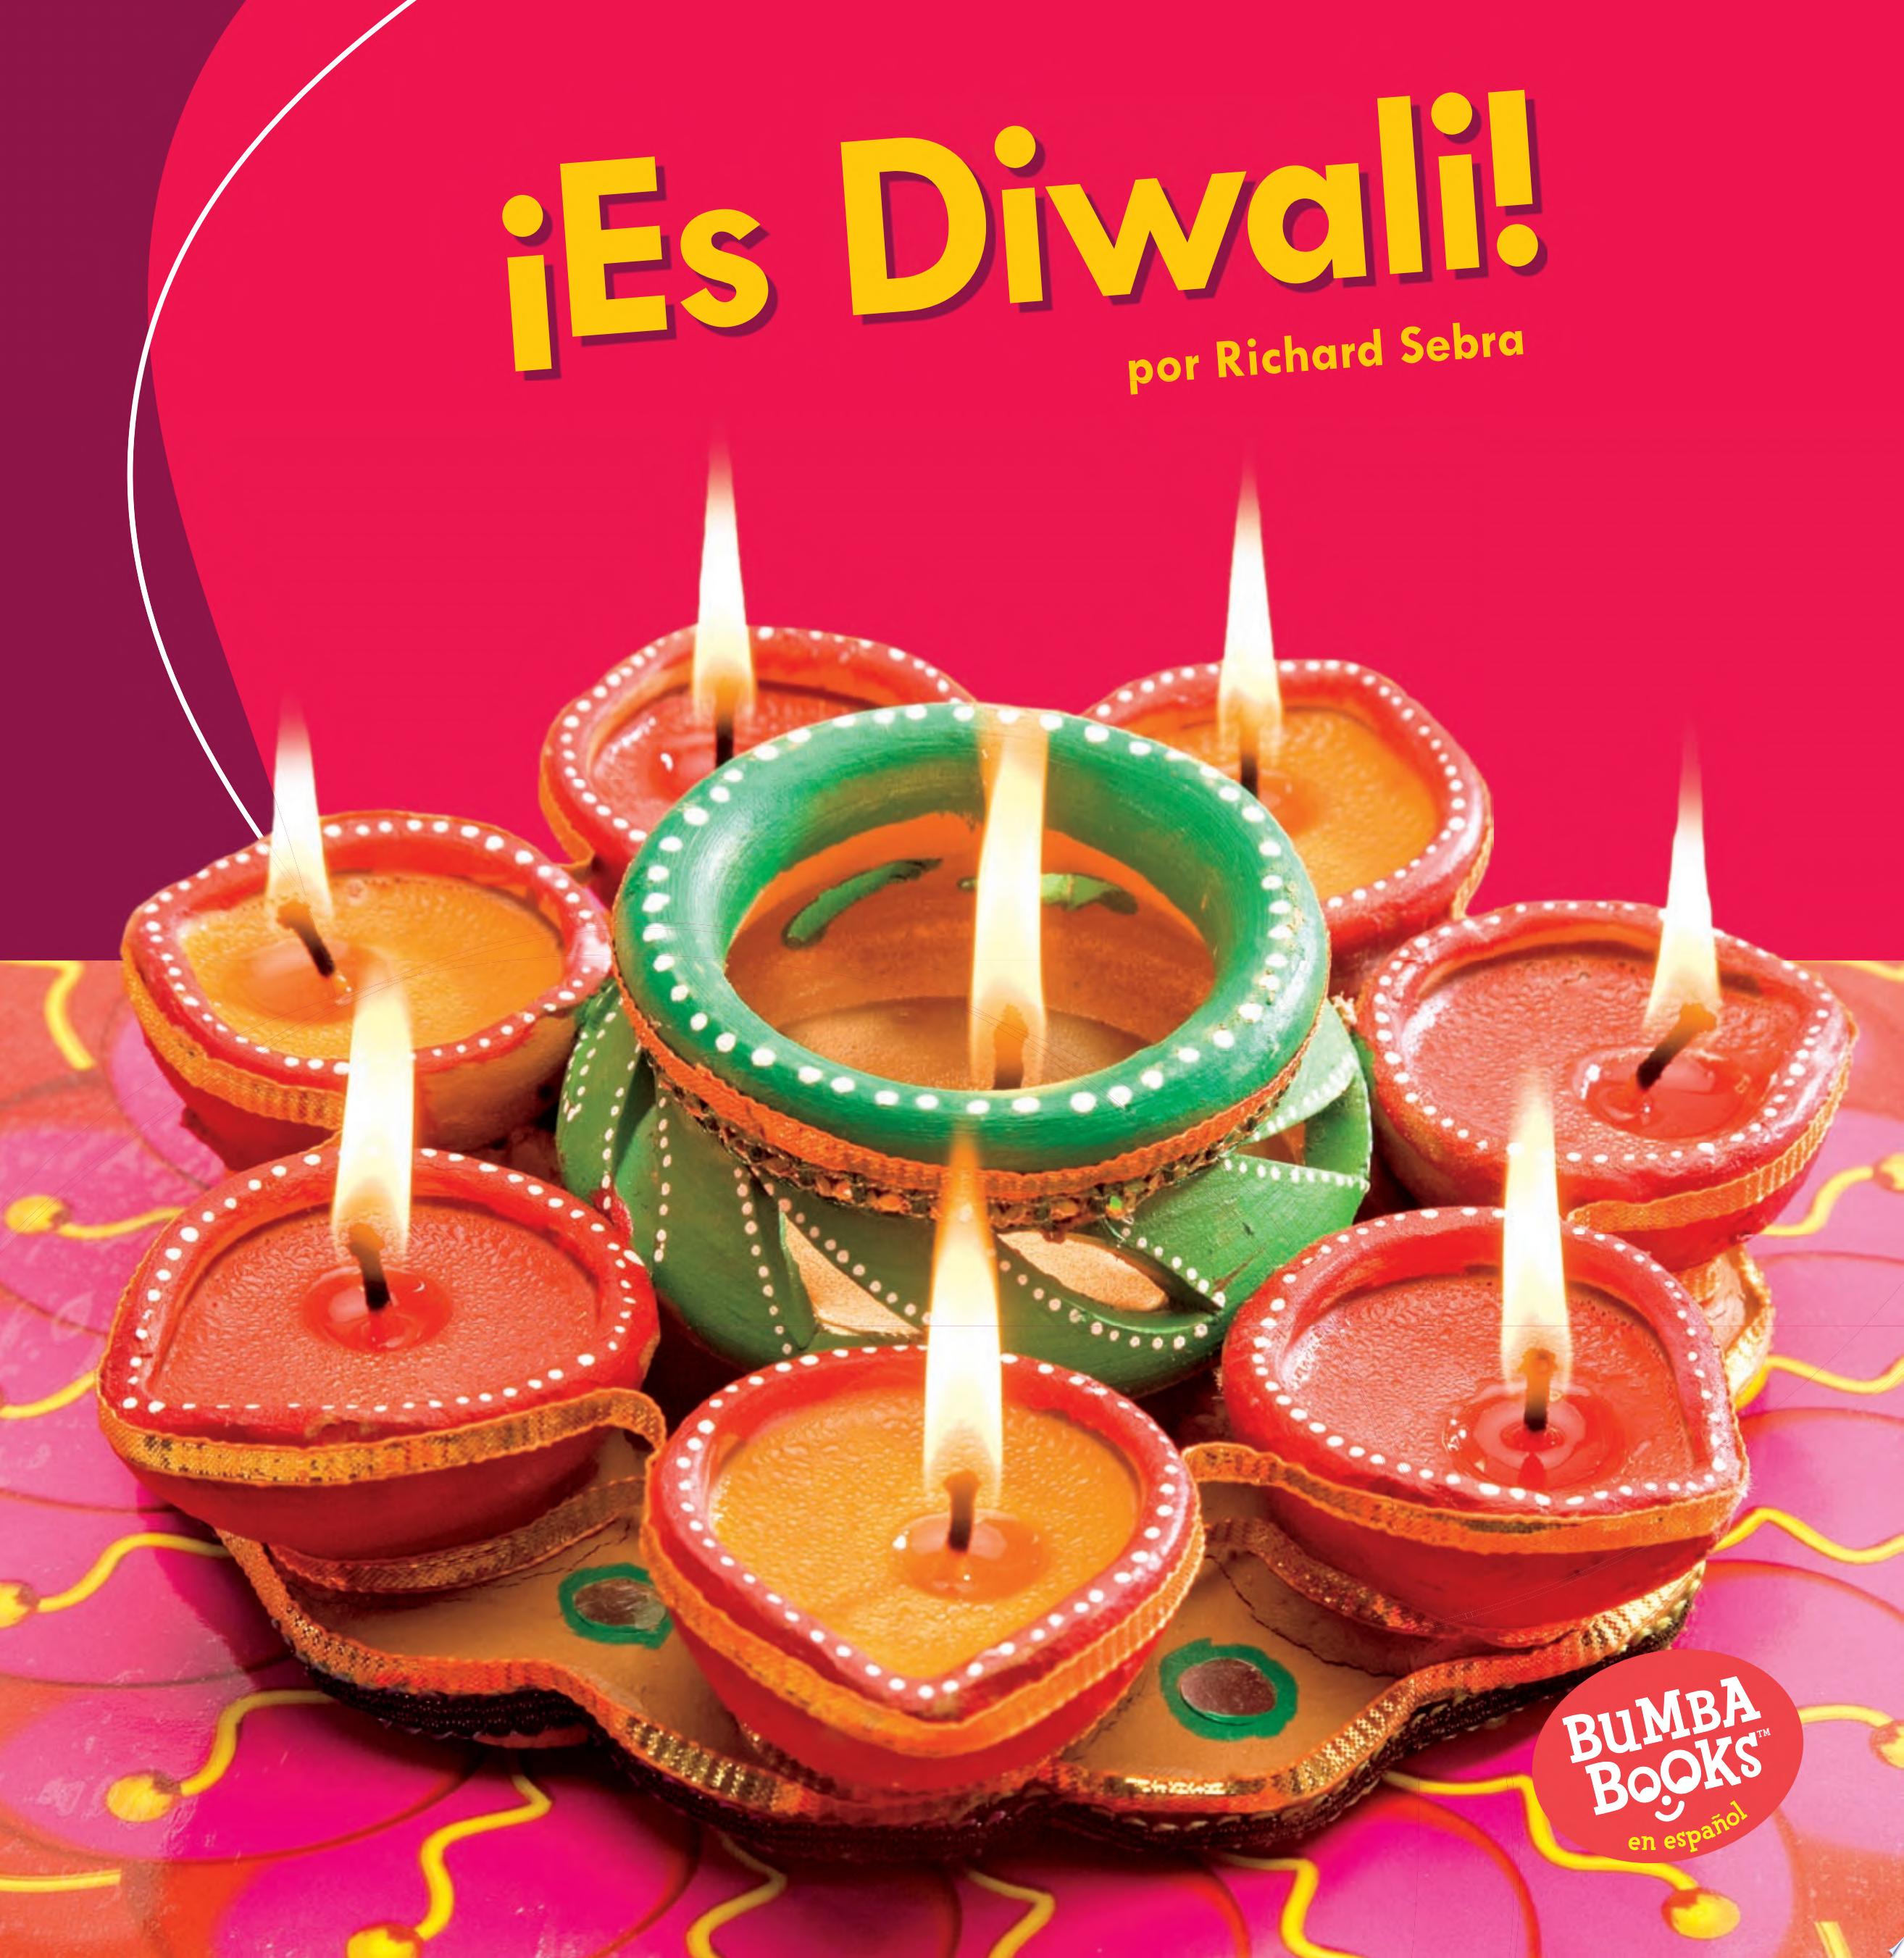 Image for "¡Es Diwali!"